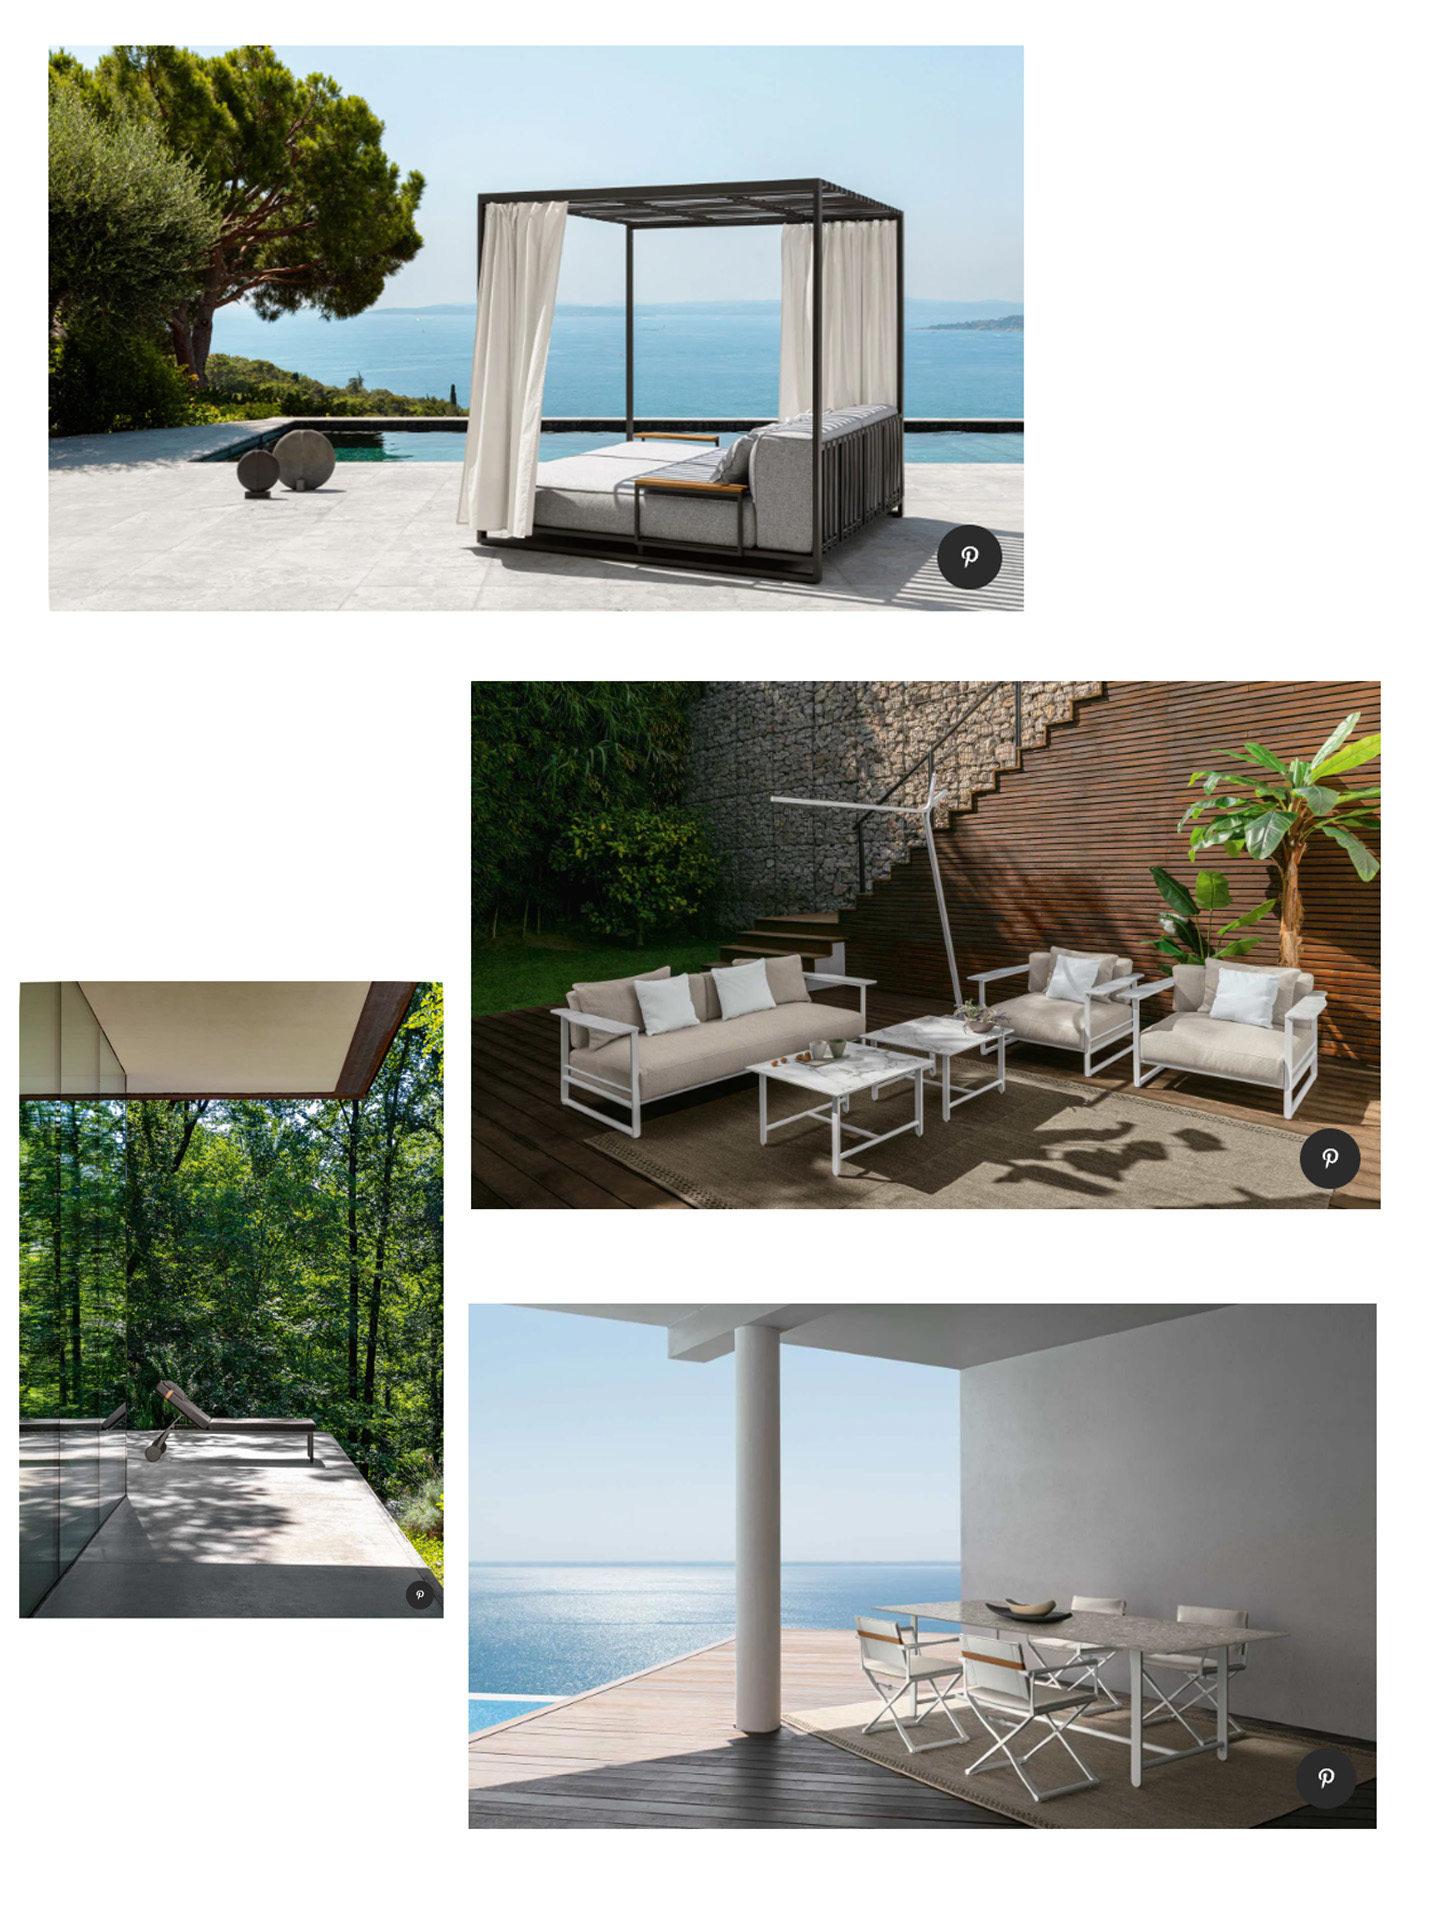 Article sur la gamme de salon de jardin de luxe Riviera pour talenti outdoor living créée par le studio jean-philippe nuel dans le magazine ad, design d'objets, designer français